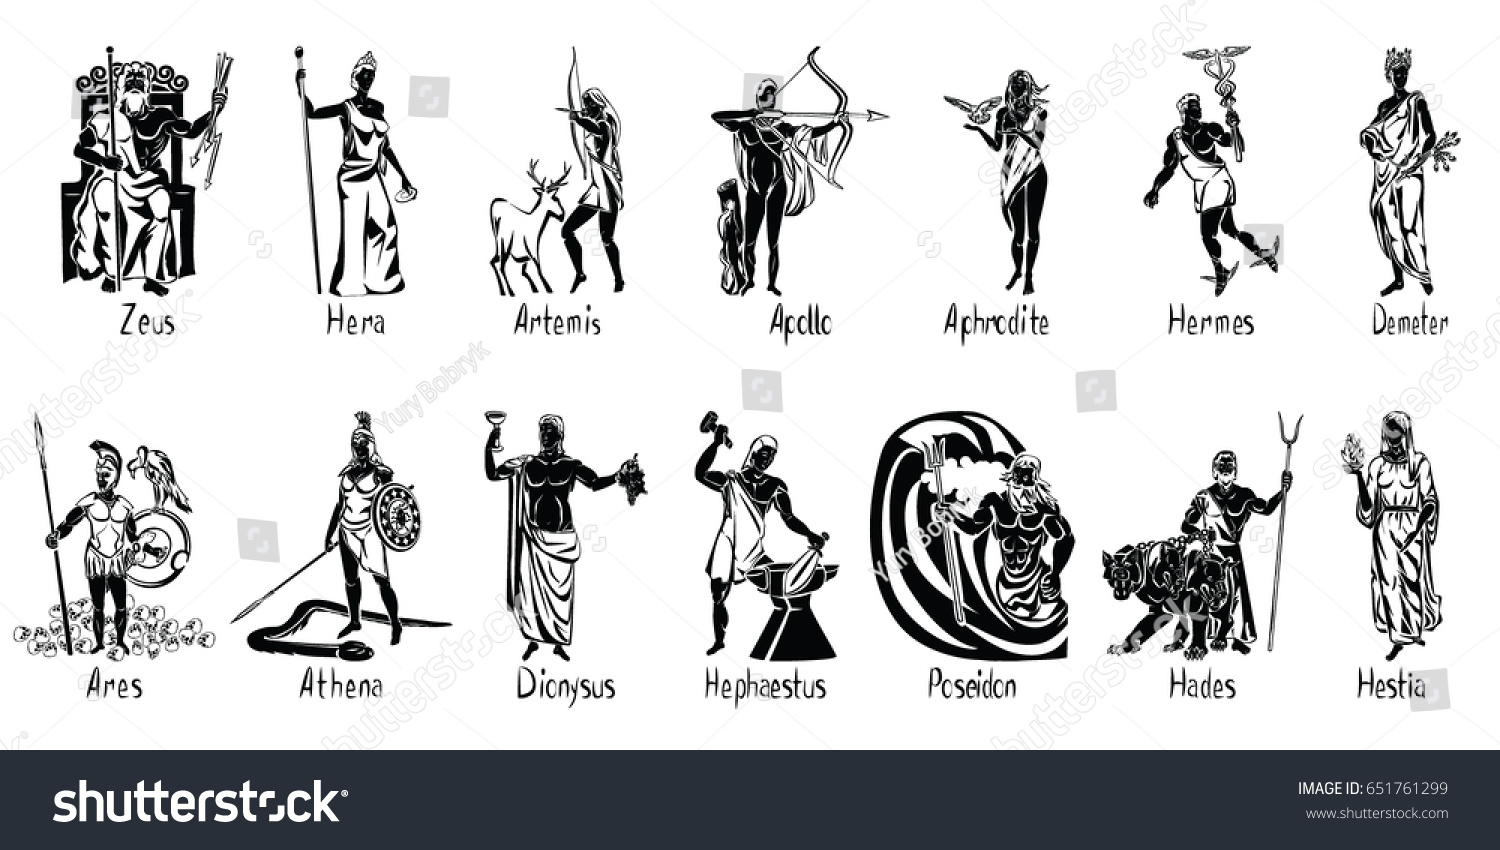 боги древней греции имена